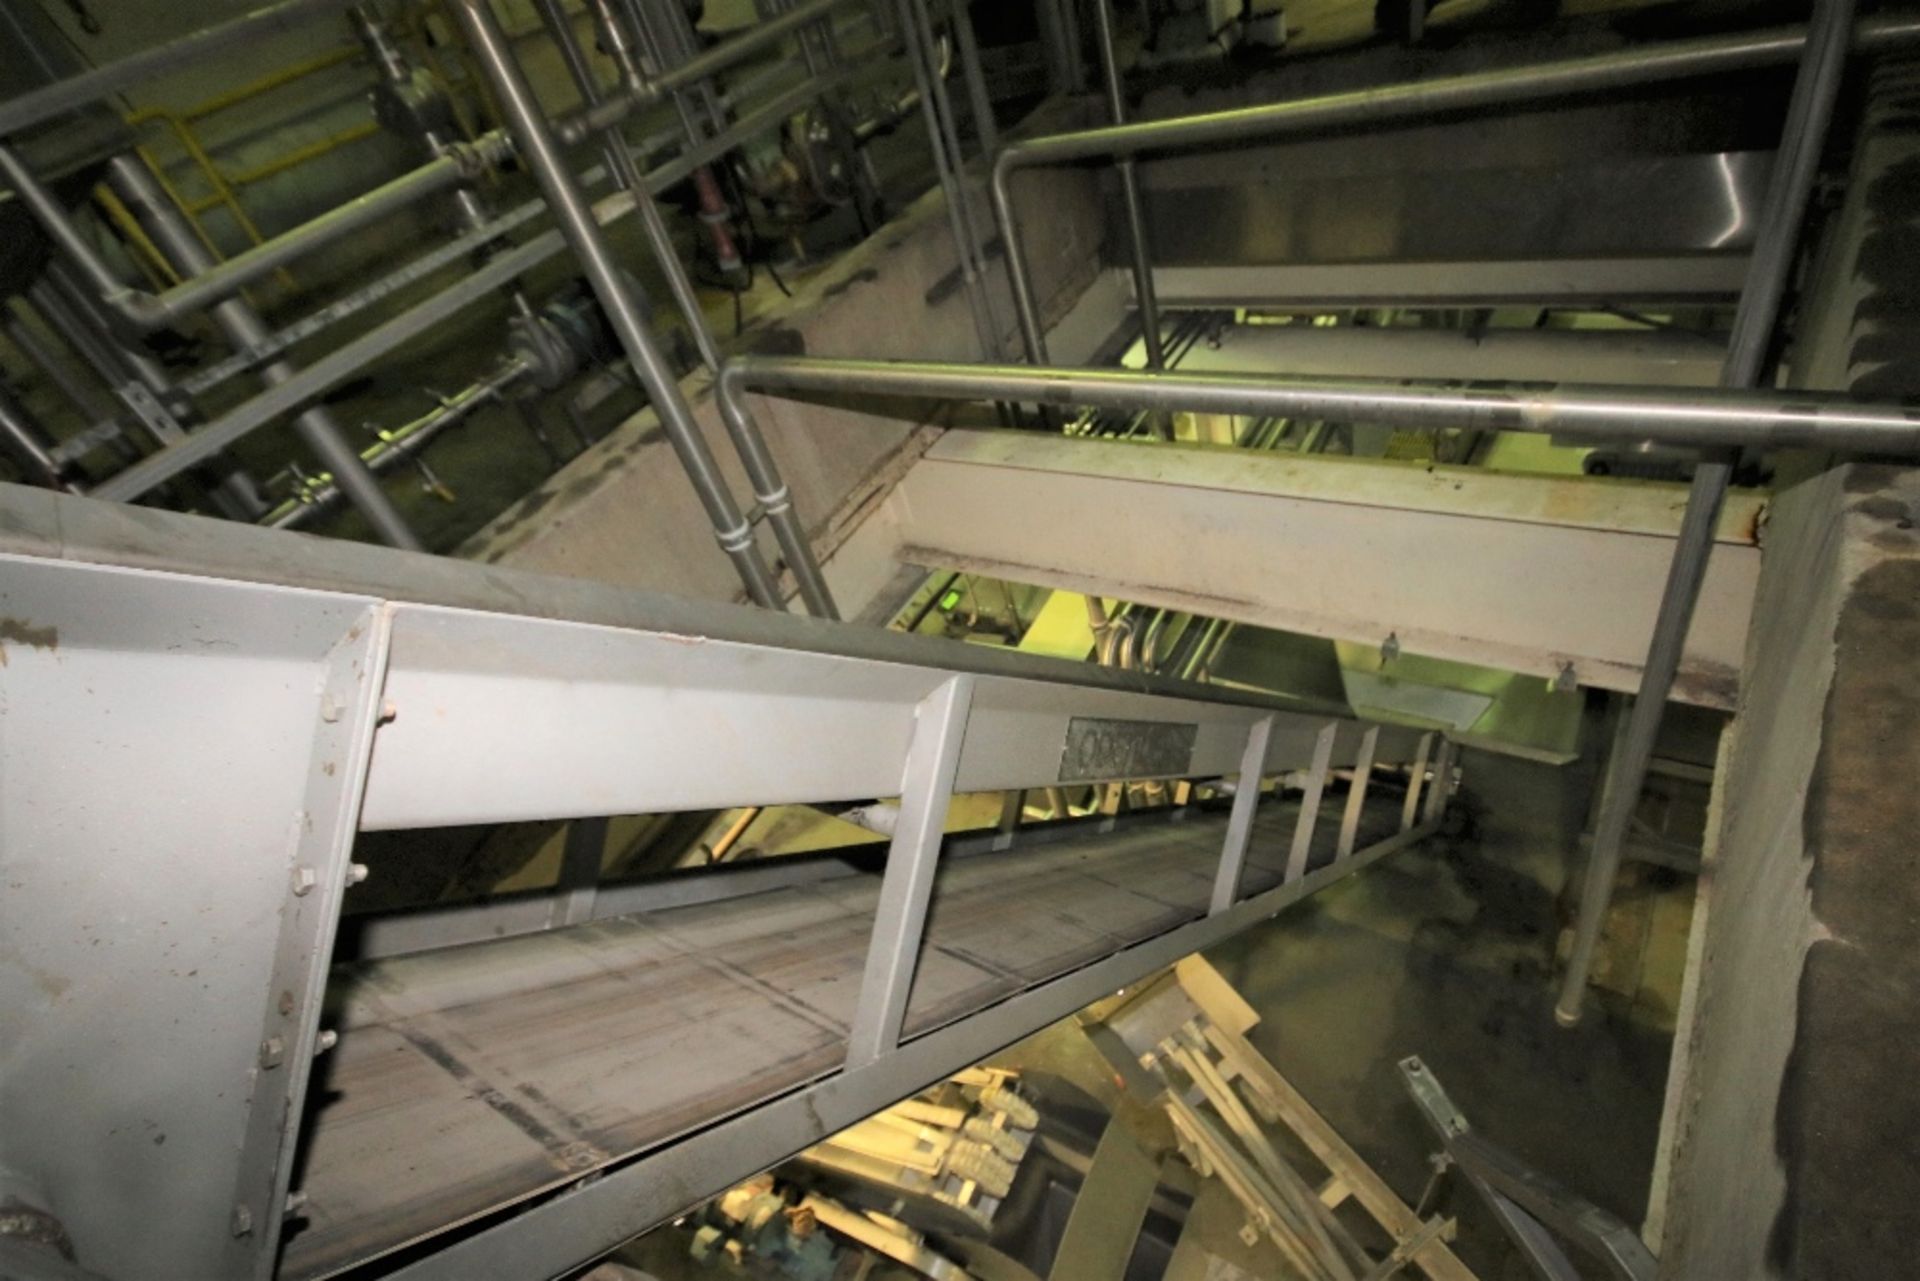 Odenberg 25 ft. L S/S Inclined Belt Conveyor / Hopper System with 23" W Belt, 19" Flights, Side - Image 4 of 5